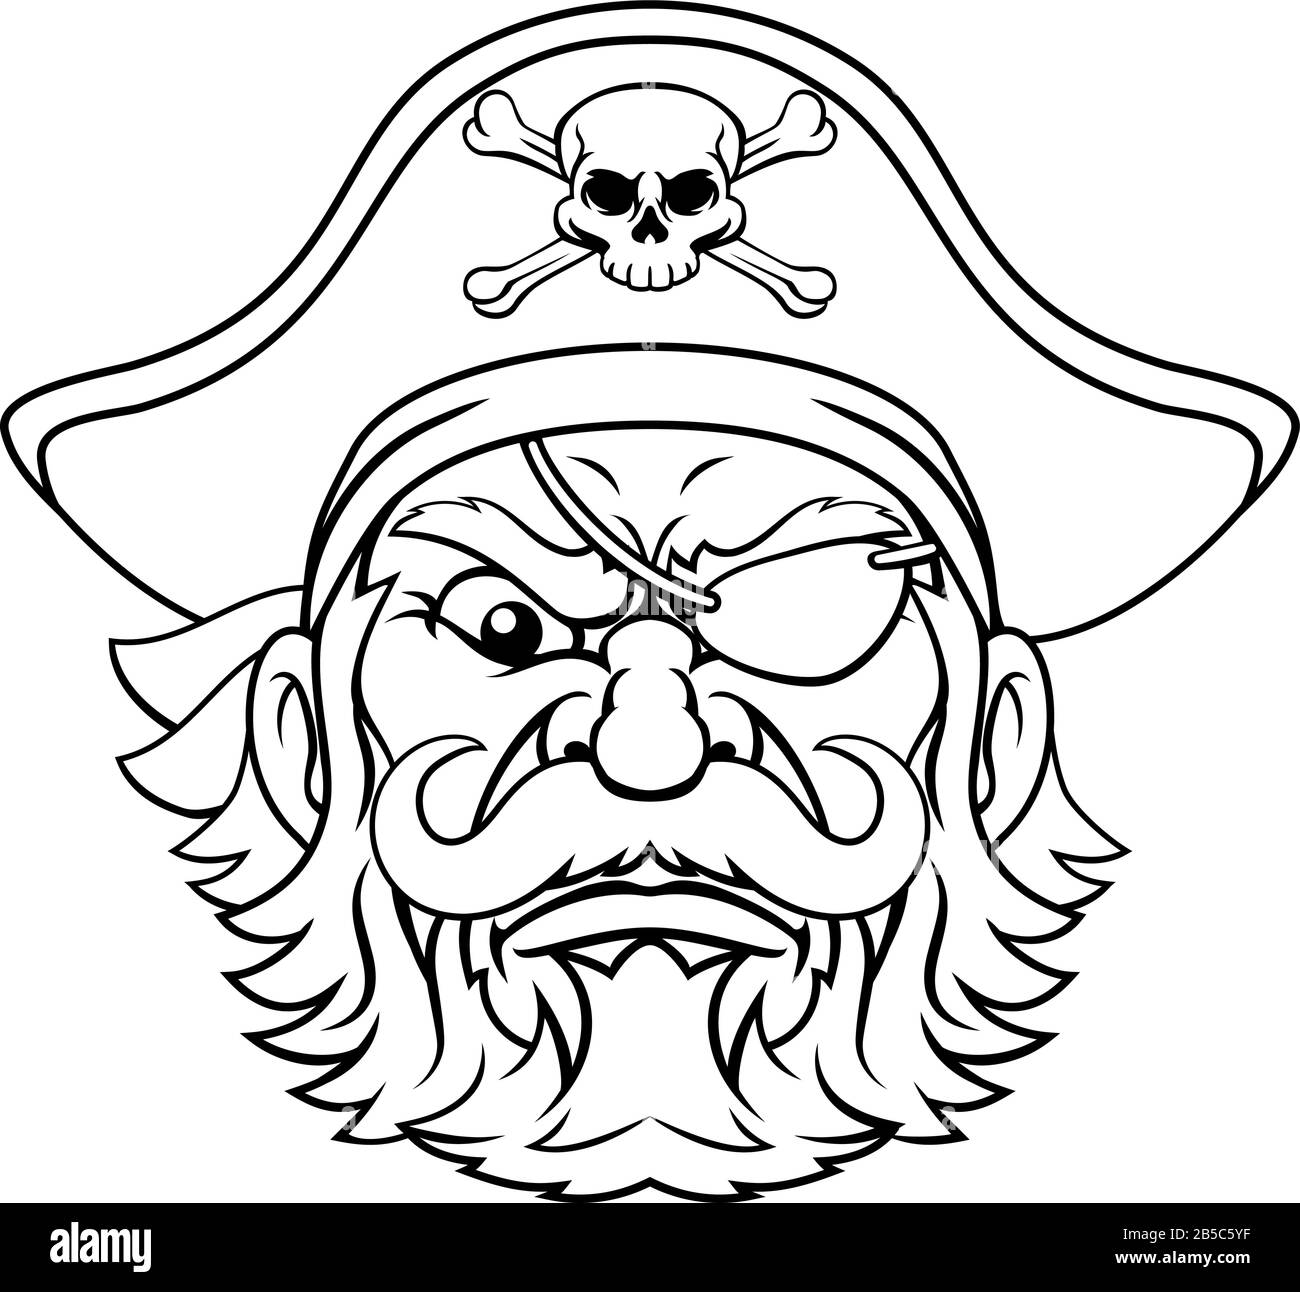 Le capitaine pirate Personnage Mascot Illustration de Vecteur